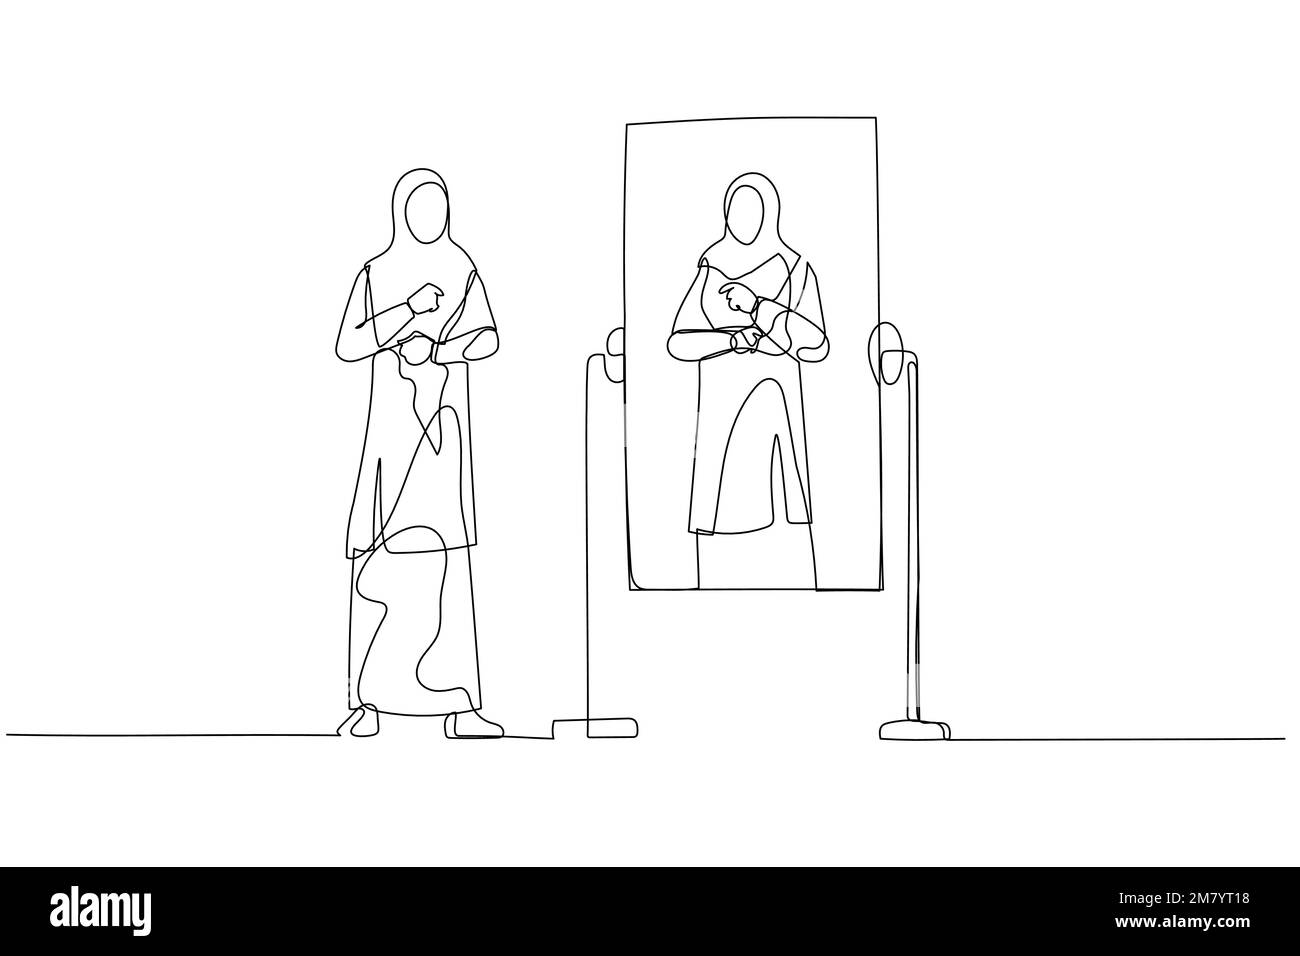 Eine Zeichnung einer Frau trägt Hijab, die sich auf die Arbeit vorbereitet und in den Spiegel schaut. Einzeiliges Kunstdesign Stock Vektor